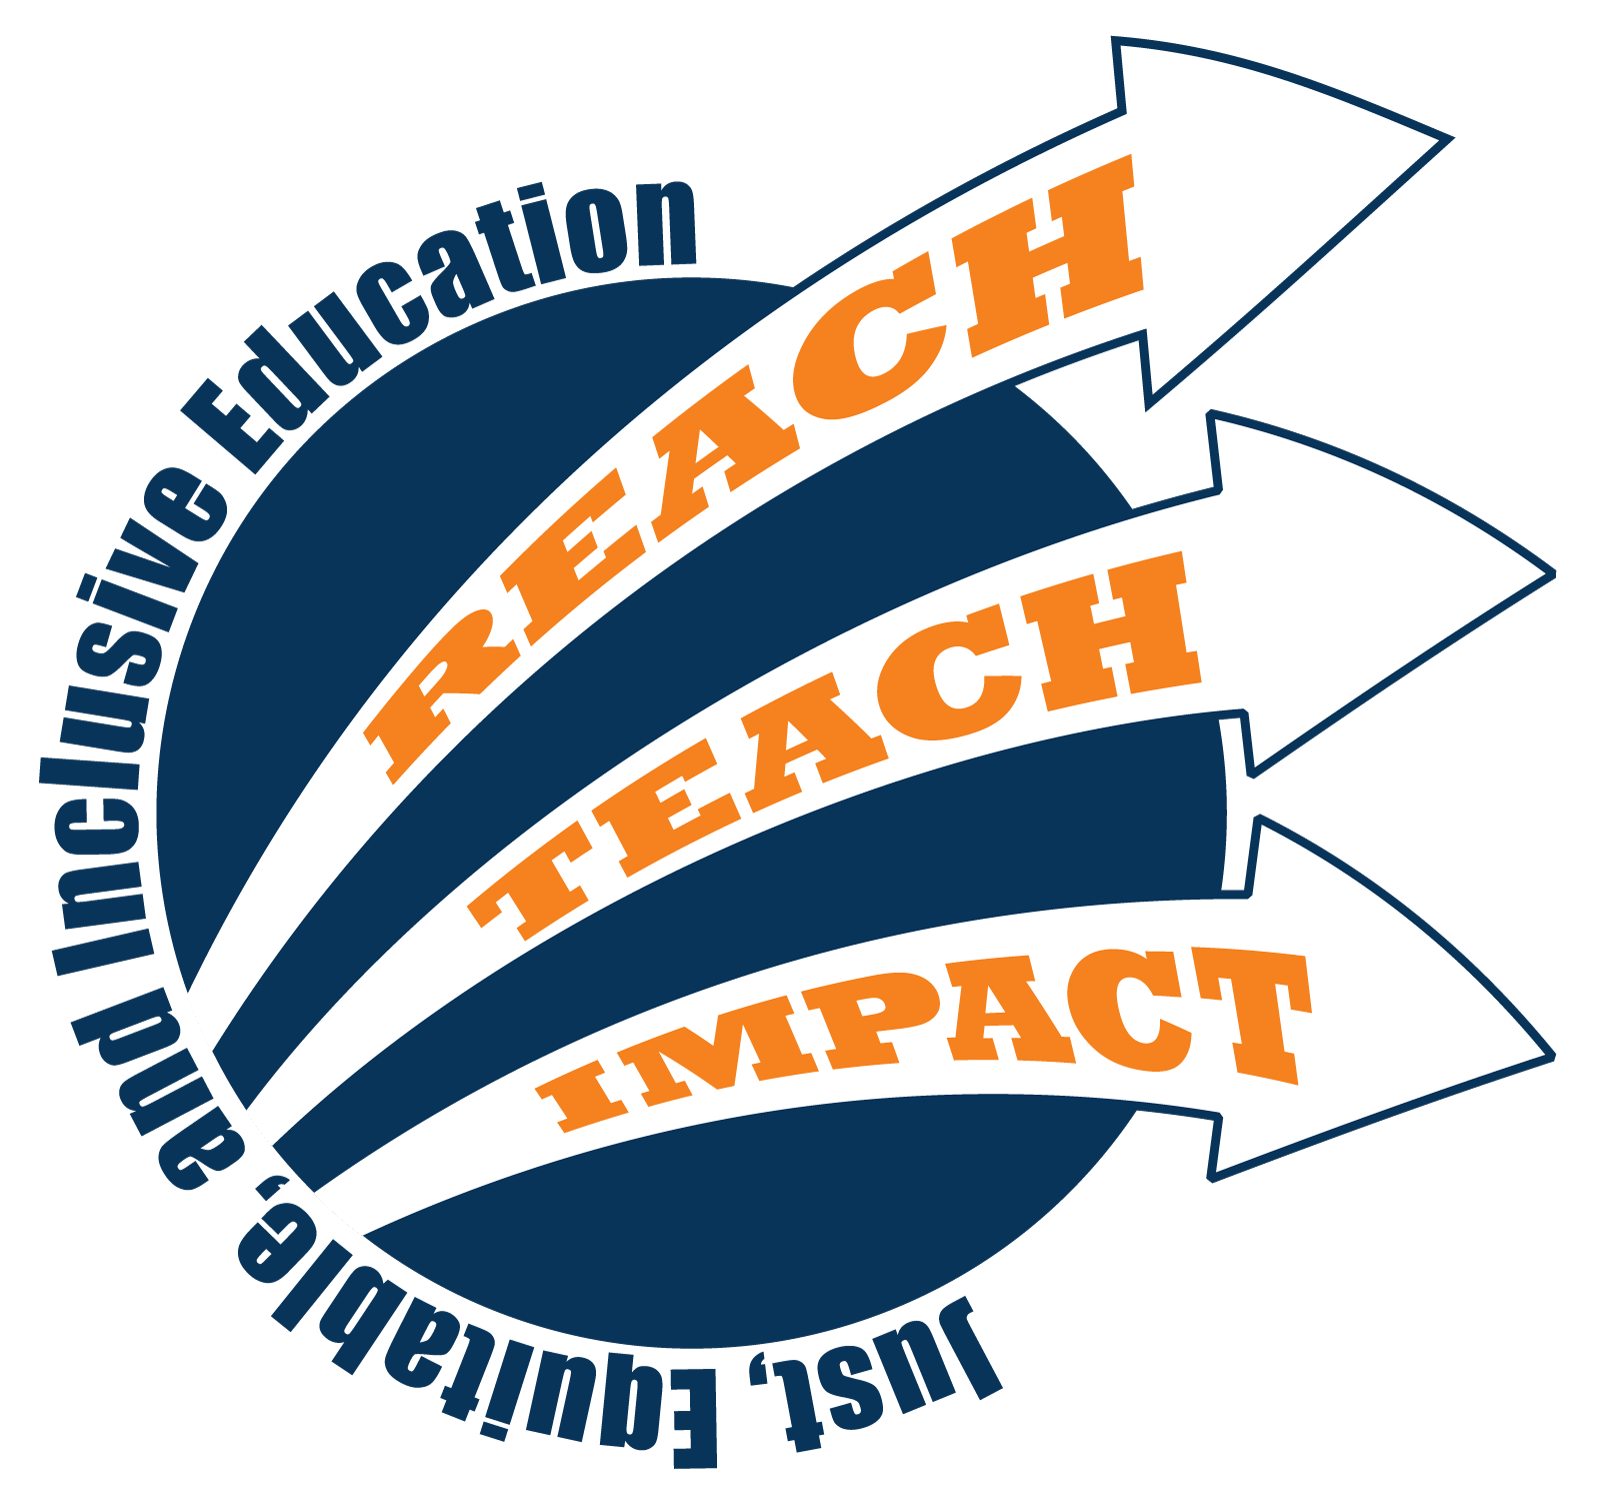 Reach, teach, impact logo